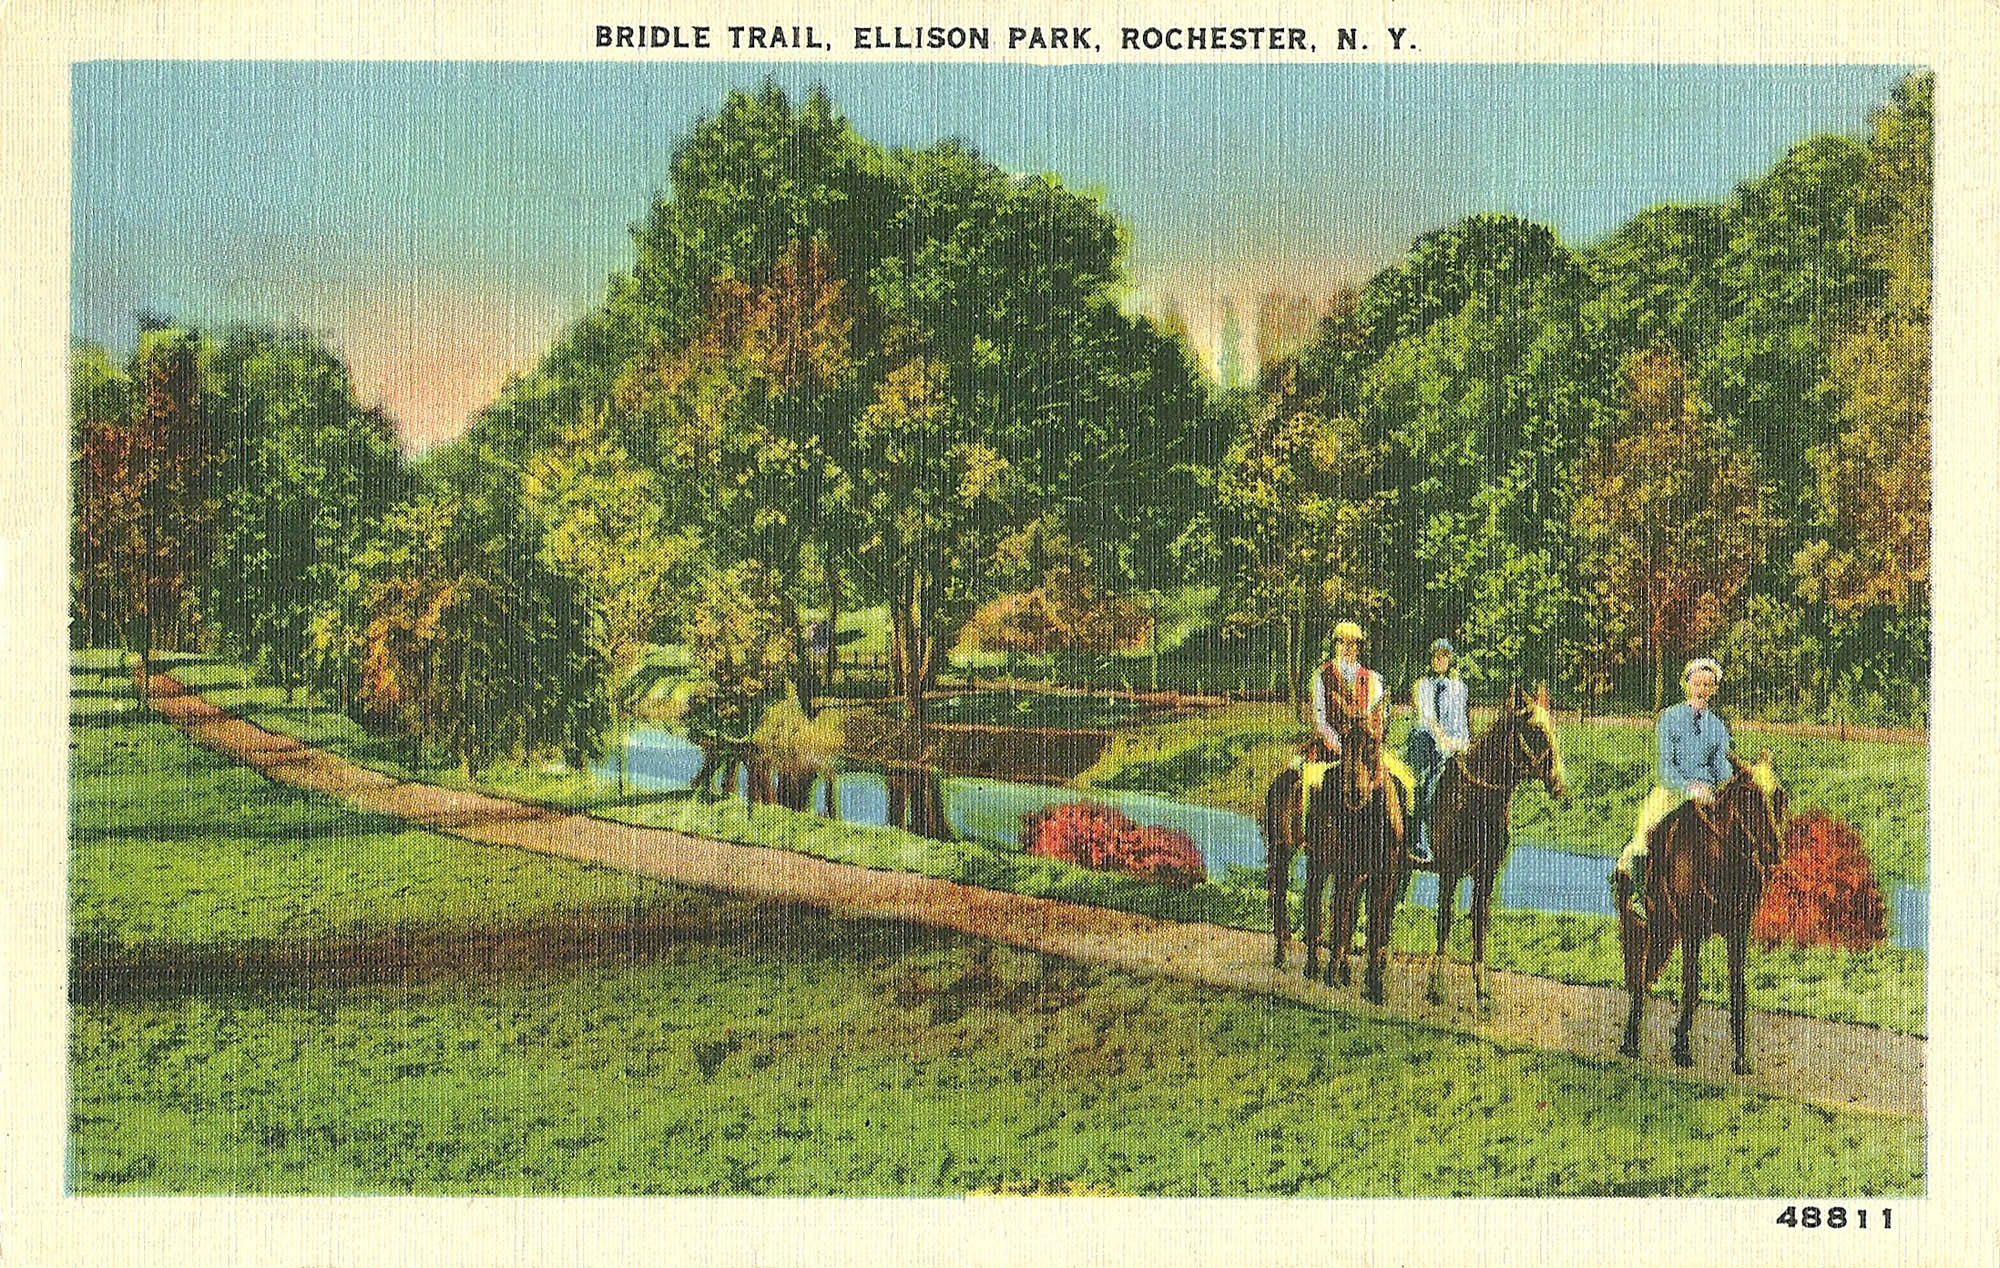 Ellison Park - Bridle Path